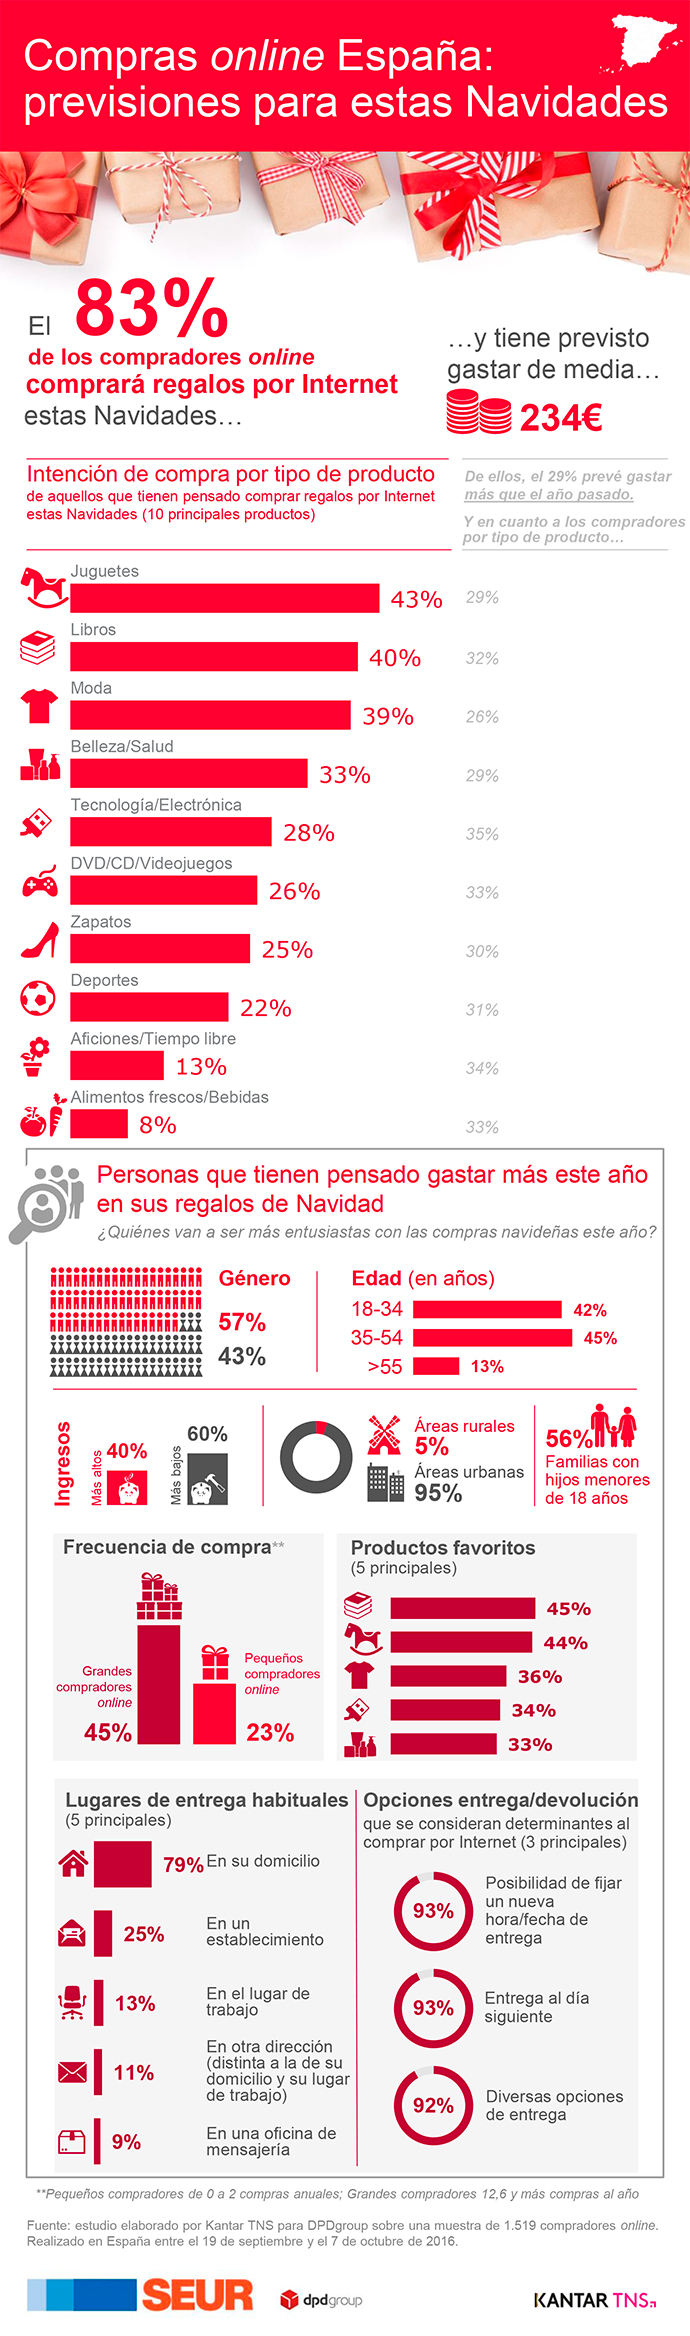 compras-online-espana-infografia